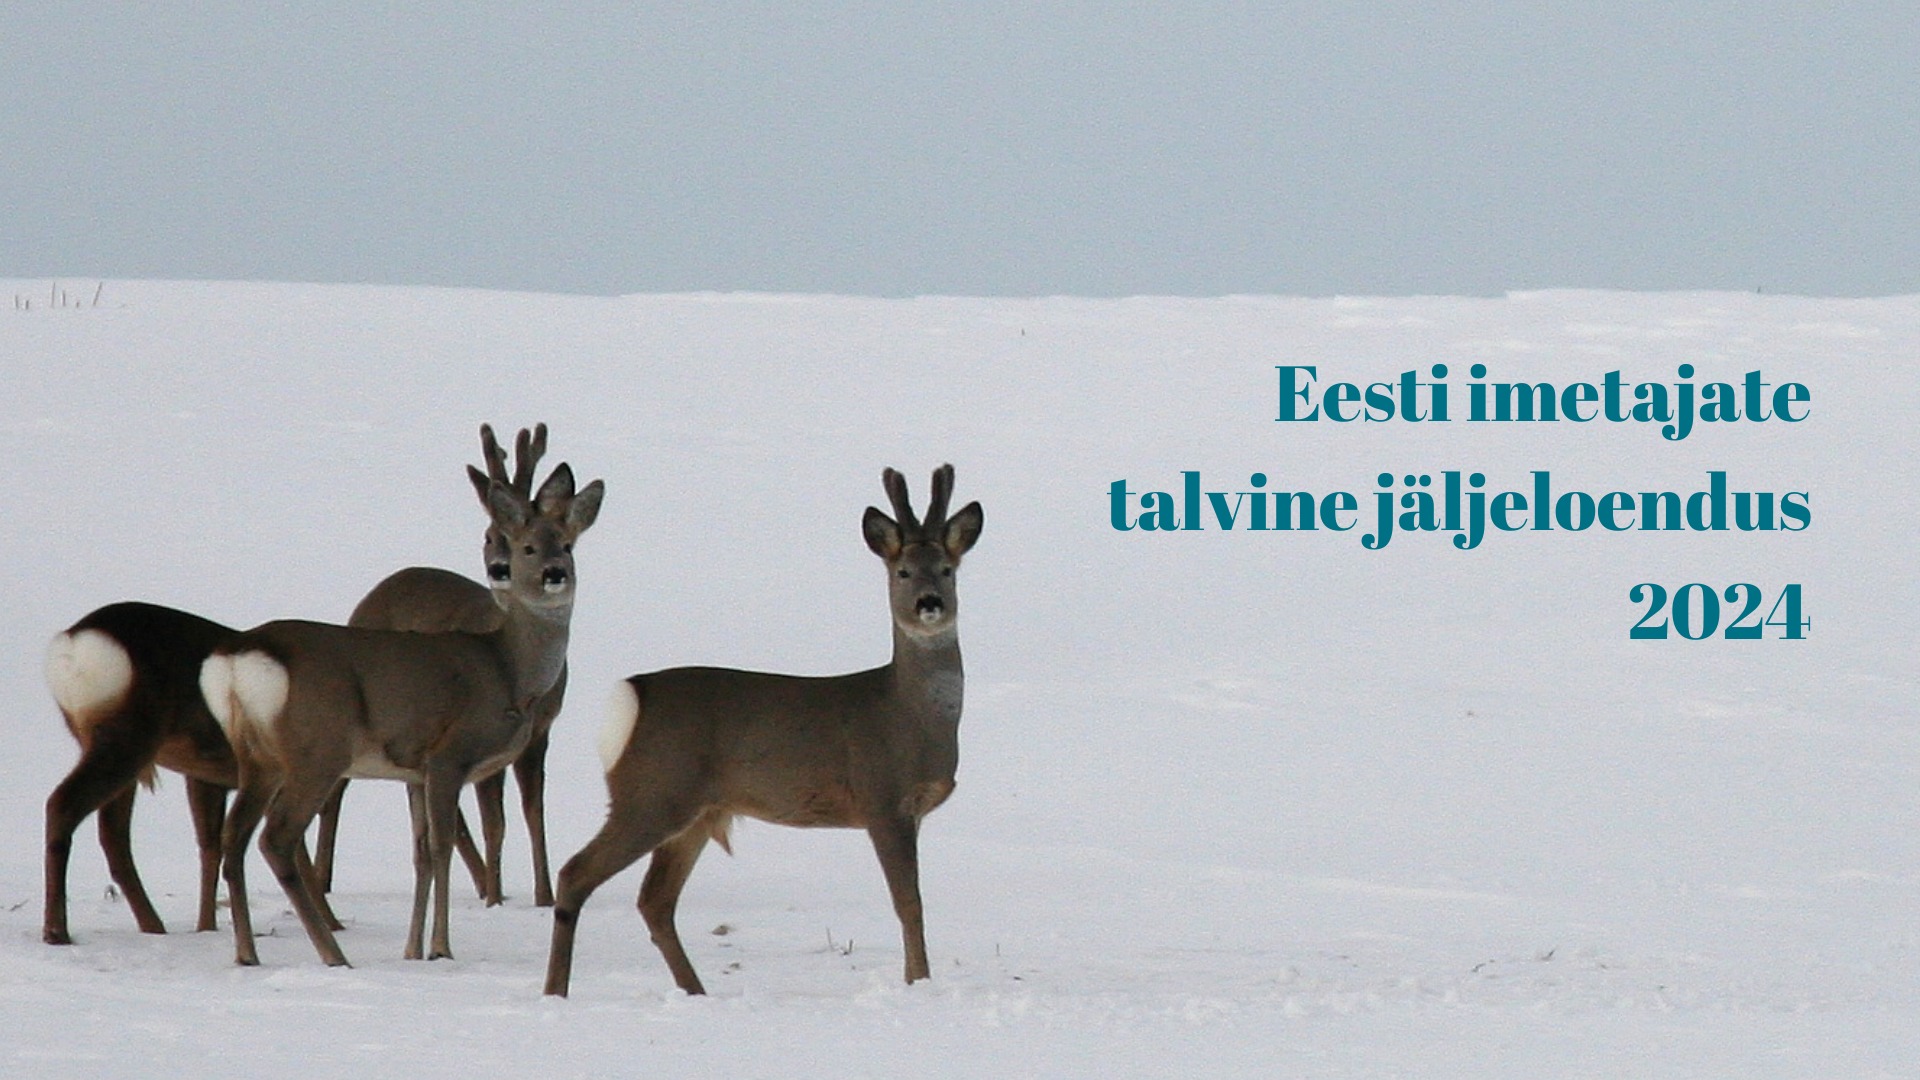 Eesti imetajate talvine jäljeloendus 2024